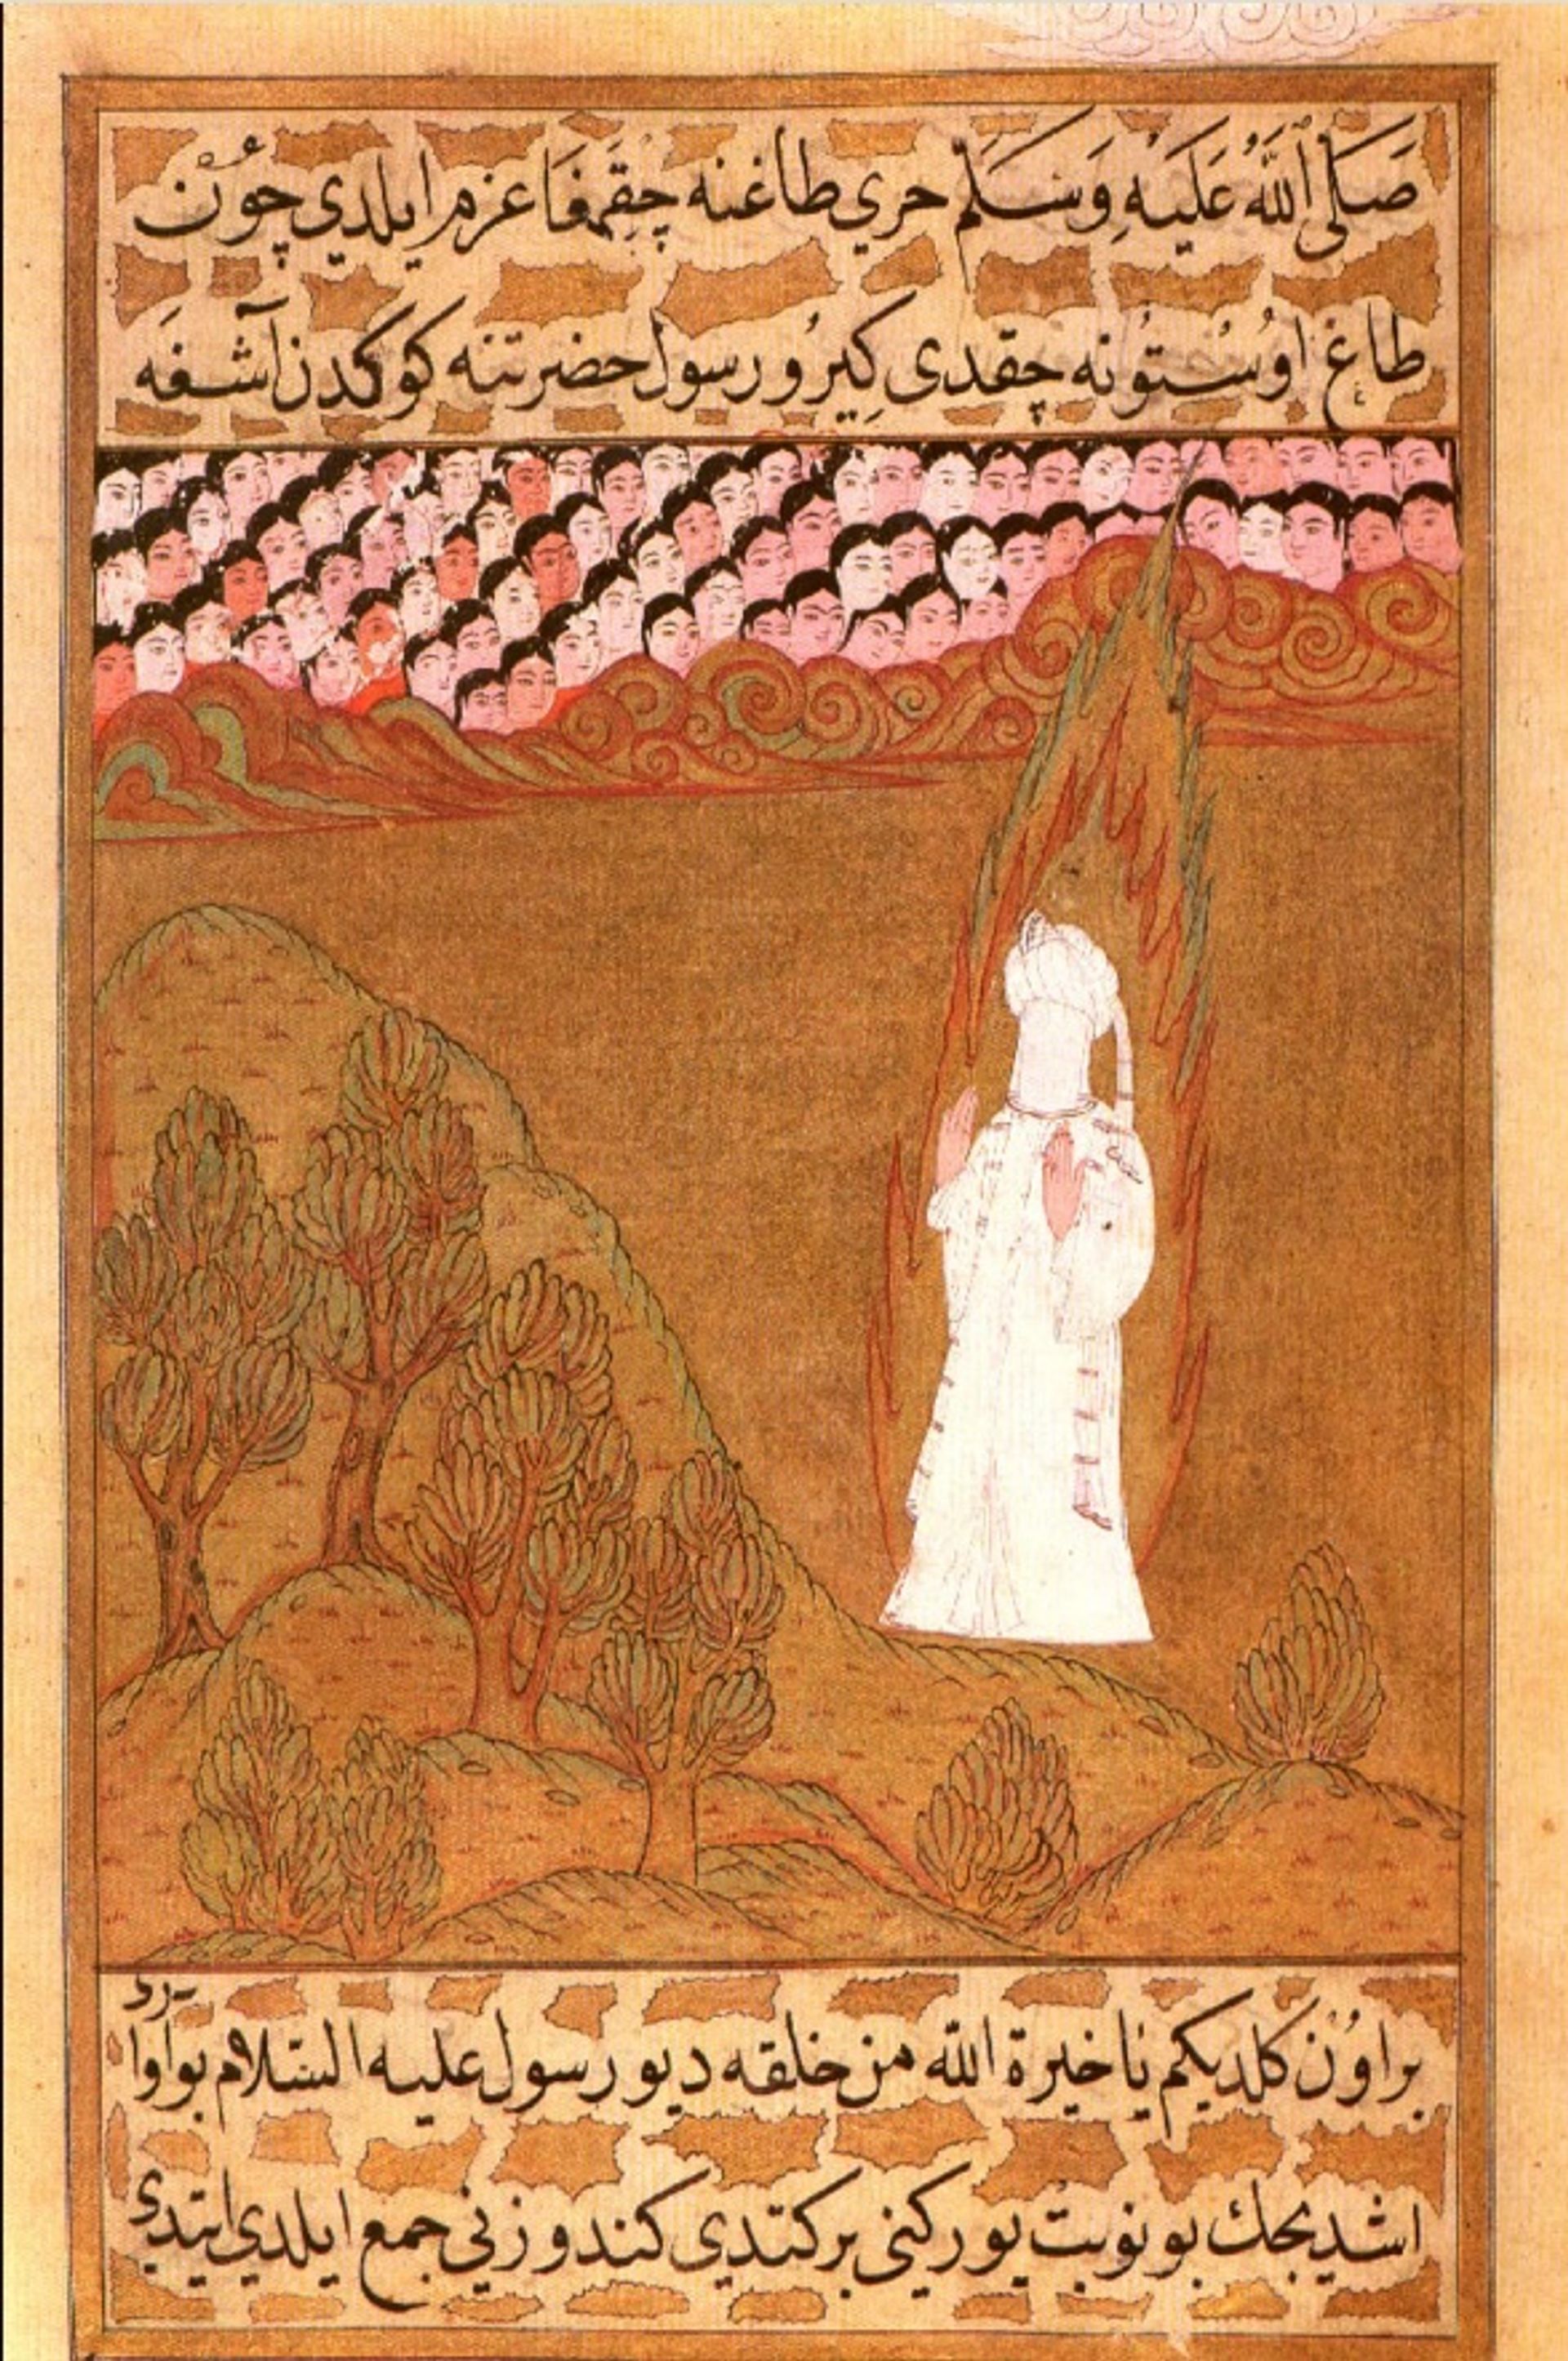 הנביא האסלאמי מוחמד (דמות ללא פנים) בהר חירא. ציור מיניאטורי עות'מאני מה-Sier-i Nebi, שנשמר ב-Topkapı Sarayı Müzesi, איסטנבול (Hazine 1222, folio 158b)